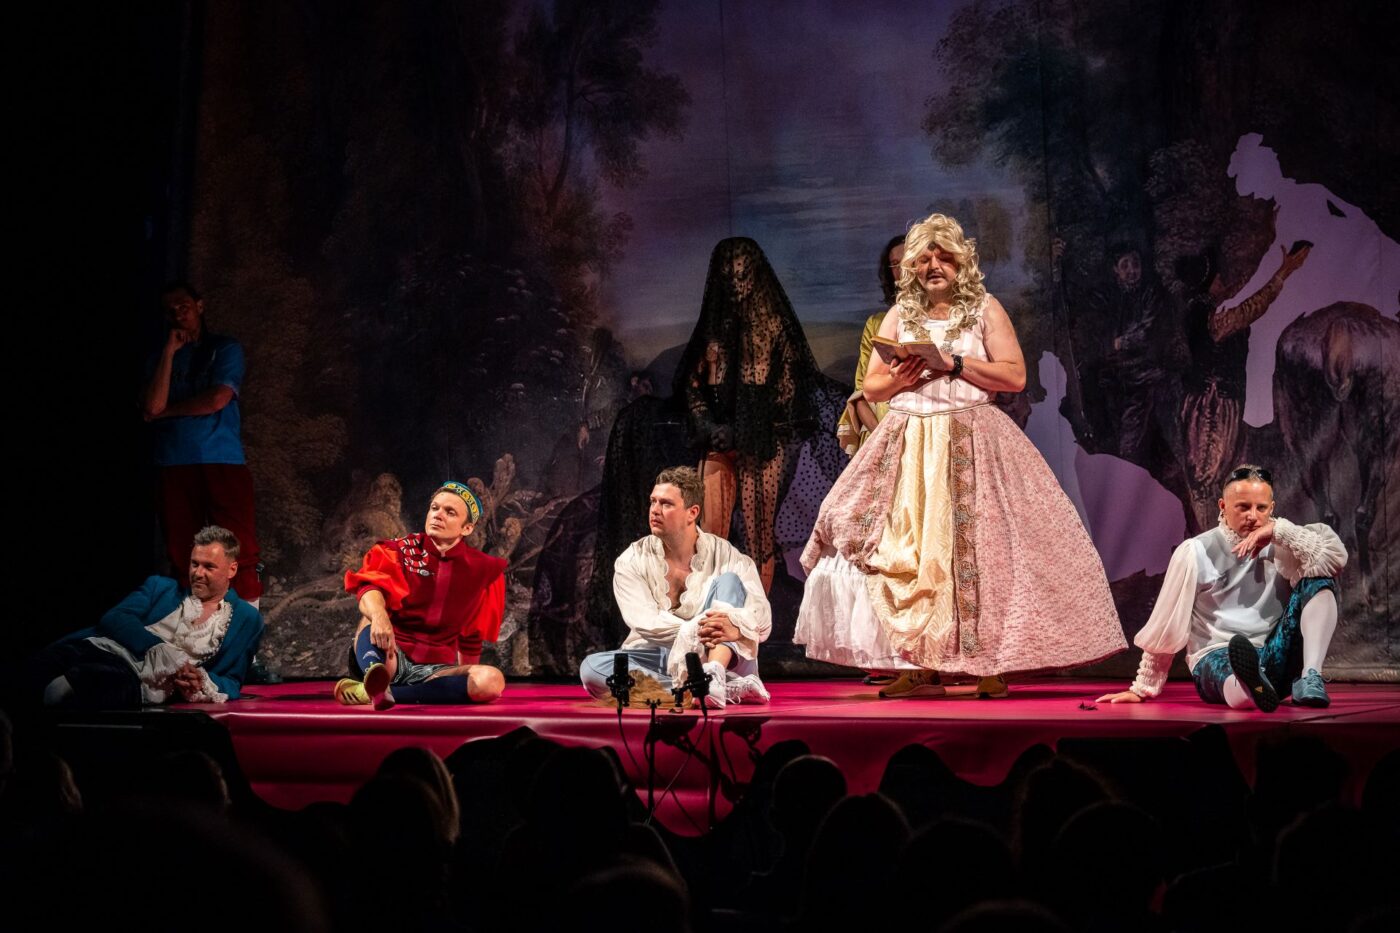 Scena z Poskromienia złośnicy. Mężczyzna w stronu kobiety (grający rolę Katarzyny) stoi na scenie w blond peruce i odczytuje list. Reszta bohaterów spektaklu siedzi na scenie z różowej wykładziny.